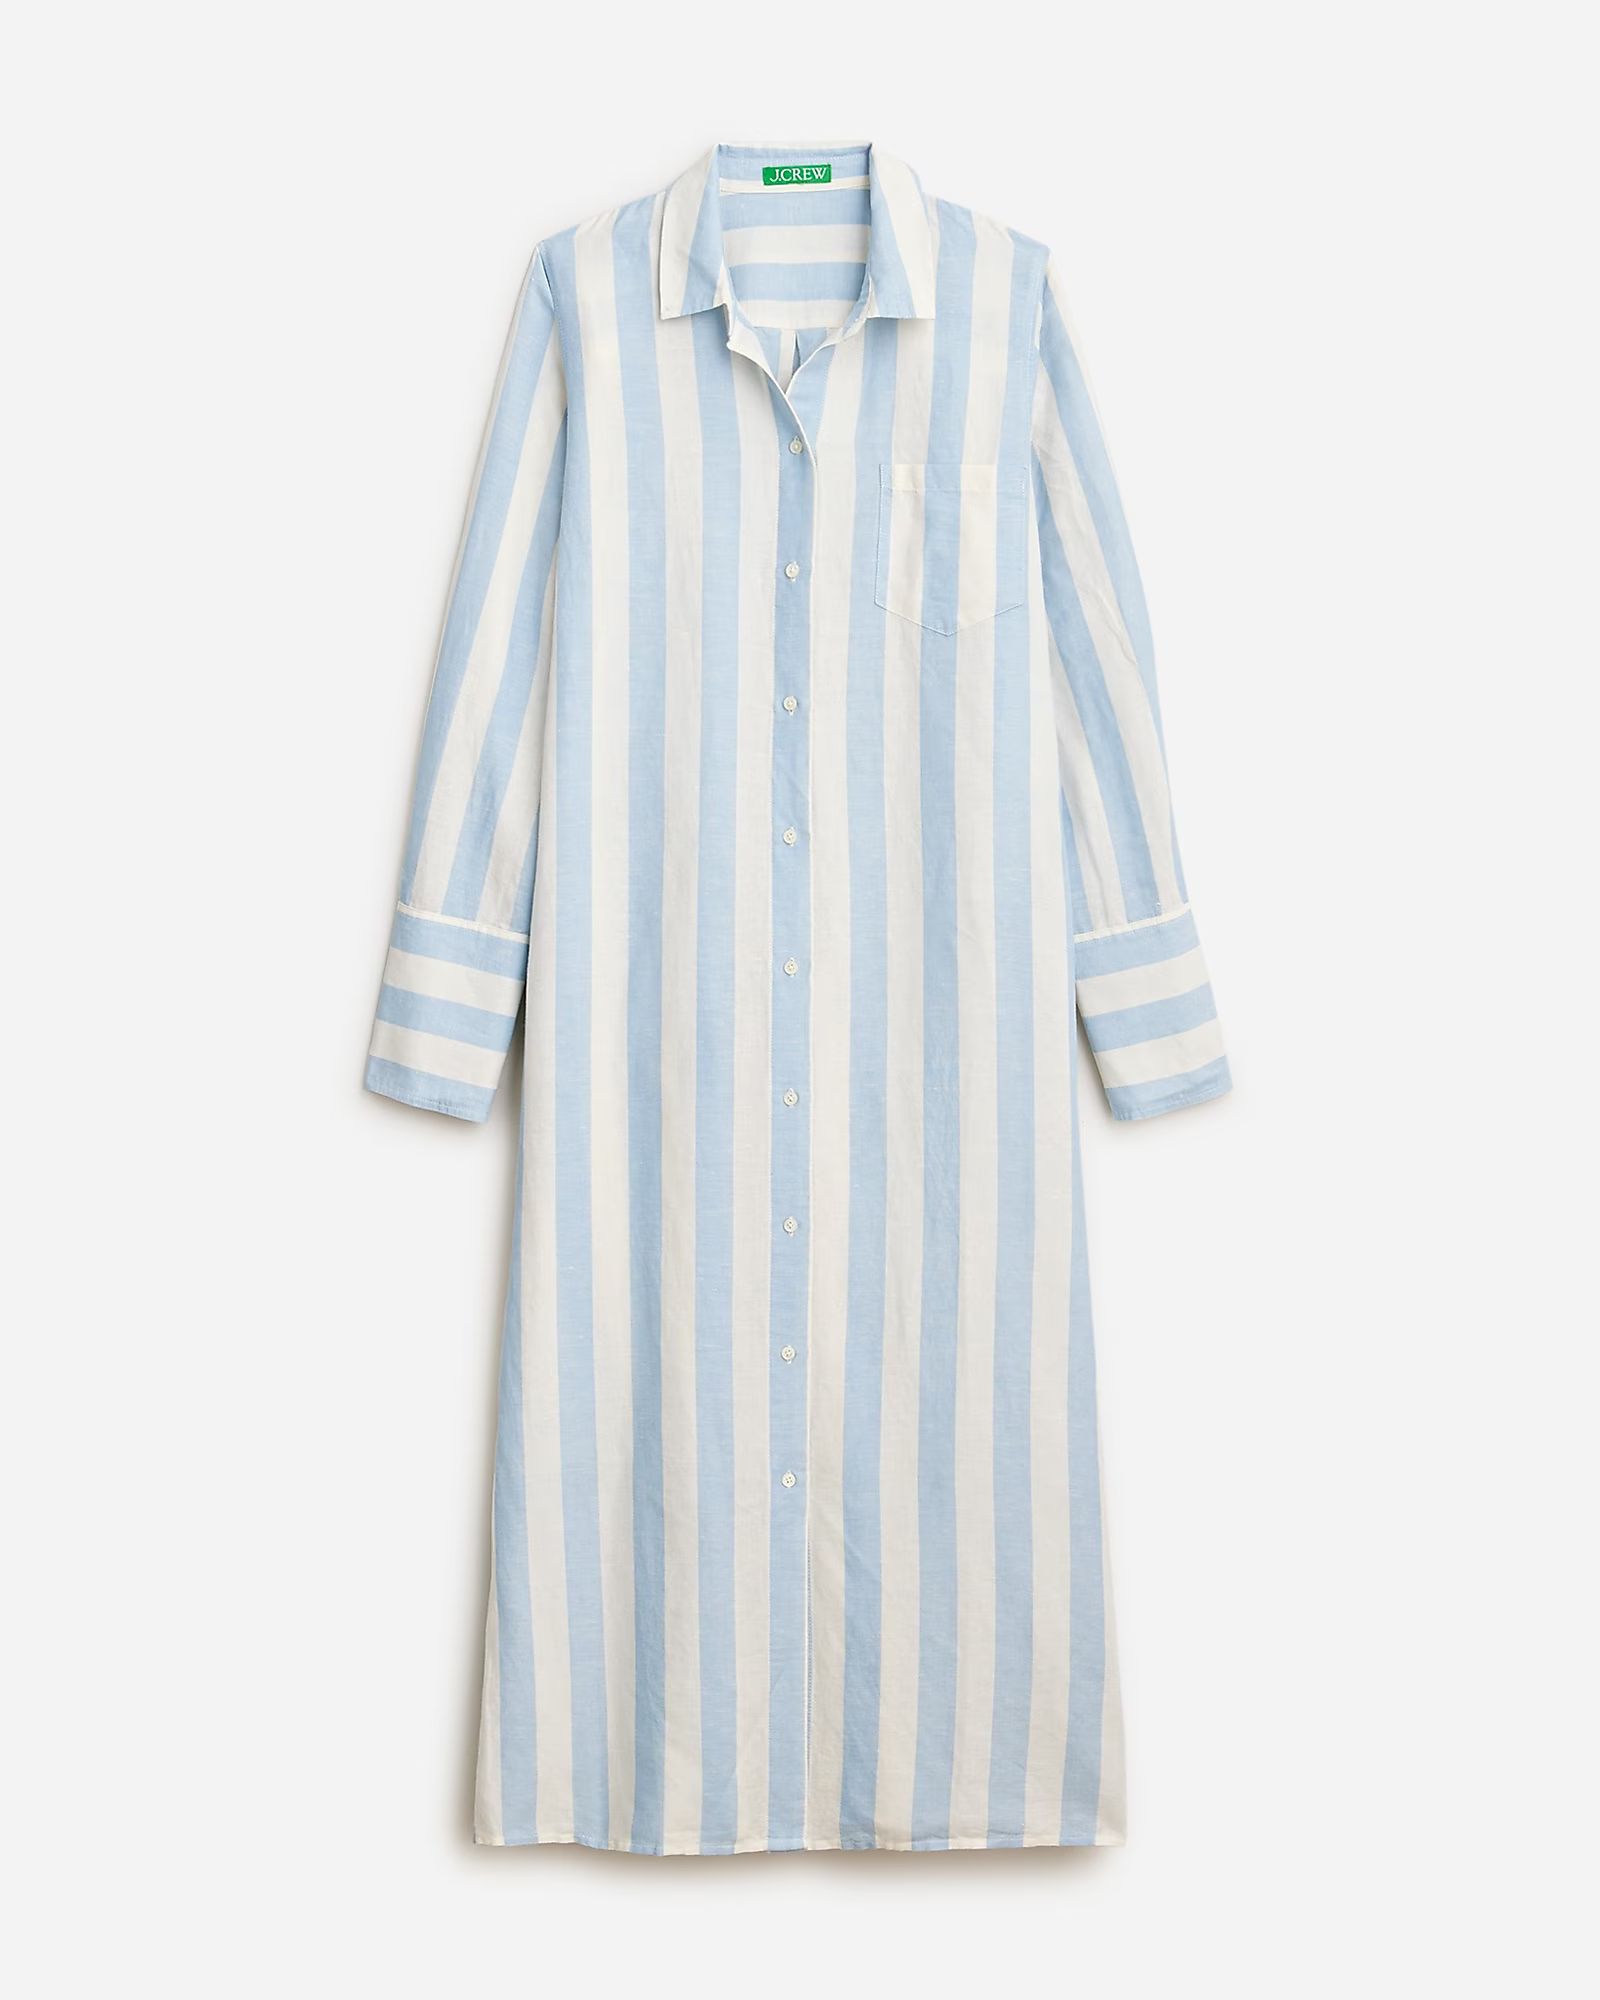 Long beach shirt in striped linen-cotton blend | J.Crew US